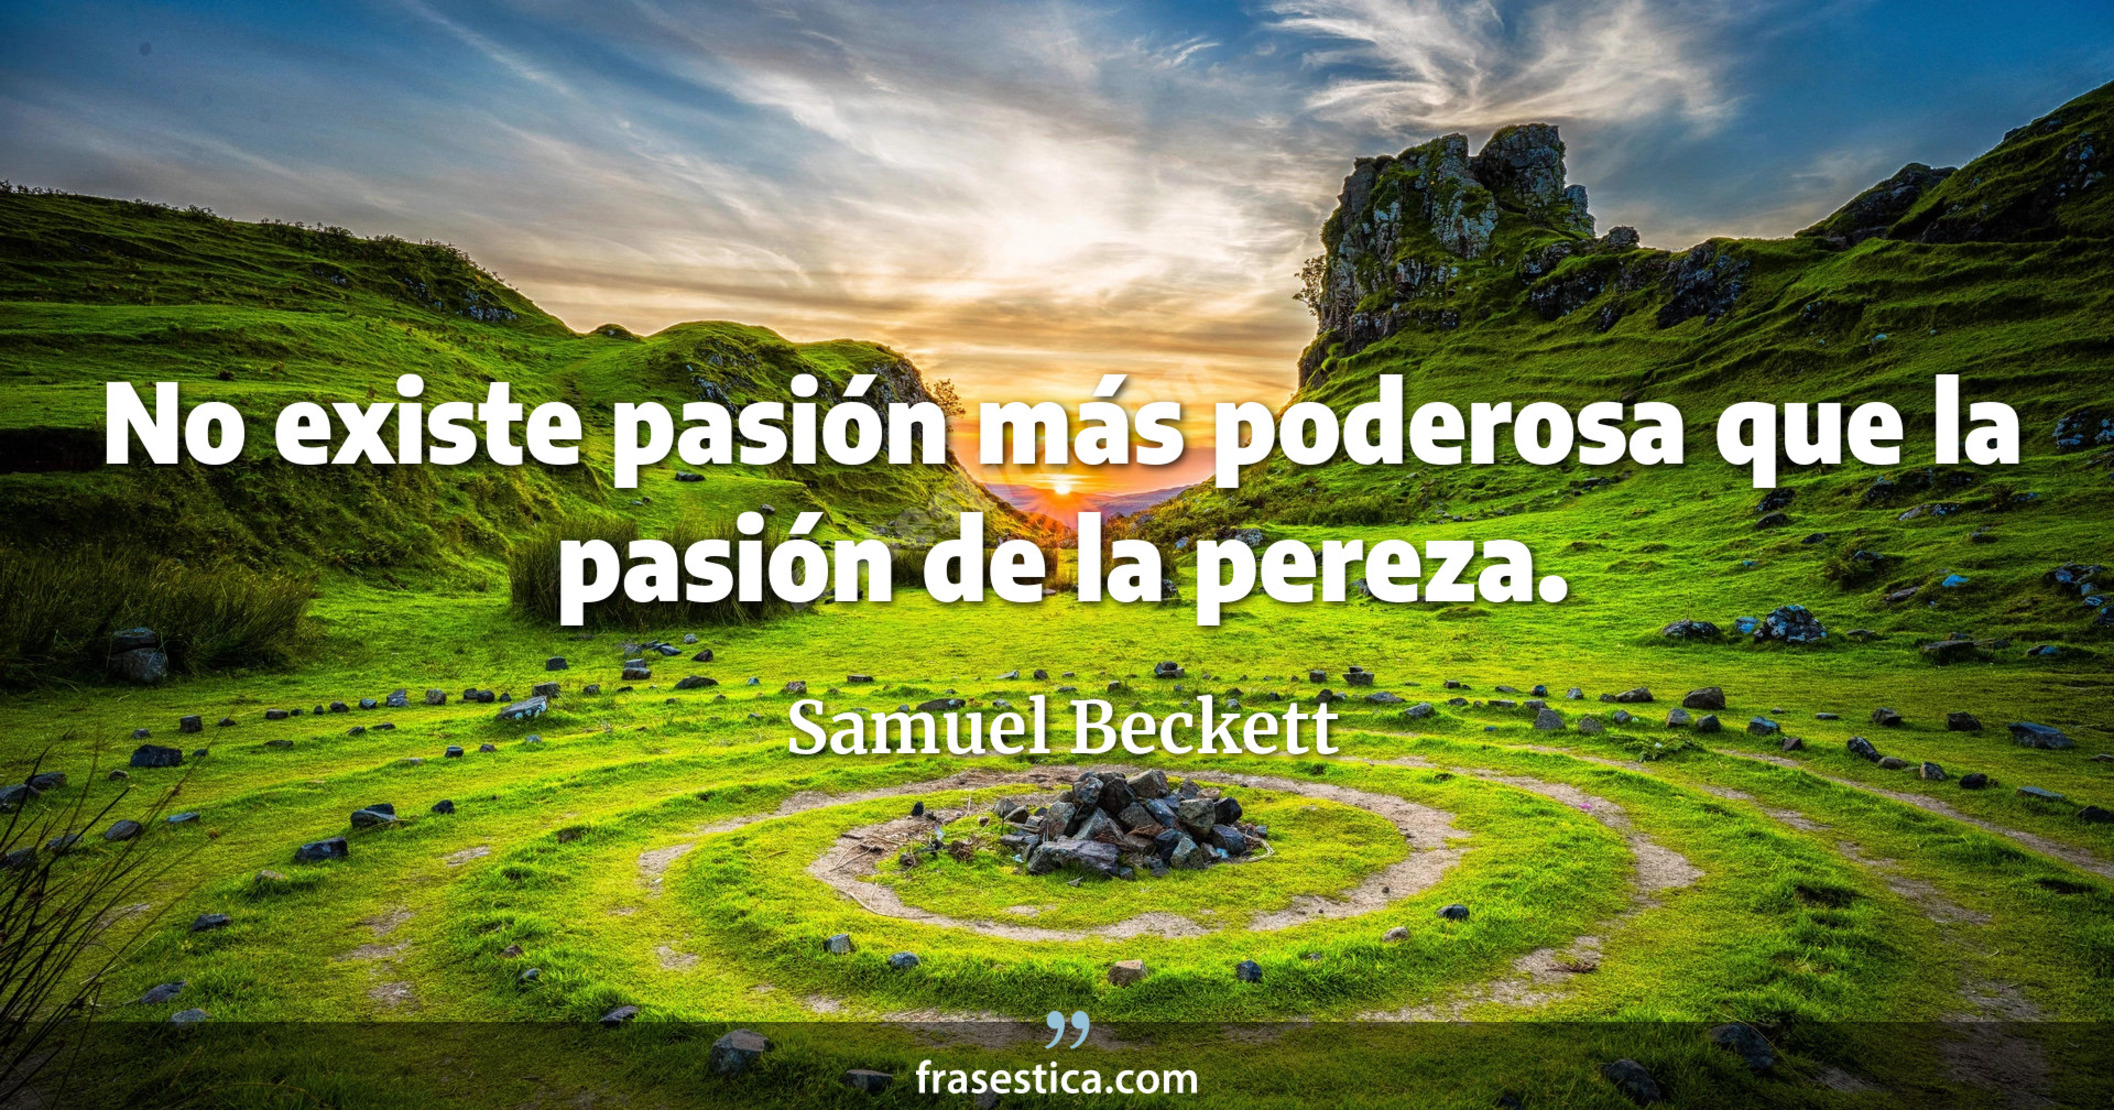 No existe pasión más poderosa que la pasión de la pereza. - Samuel Beckett